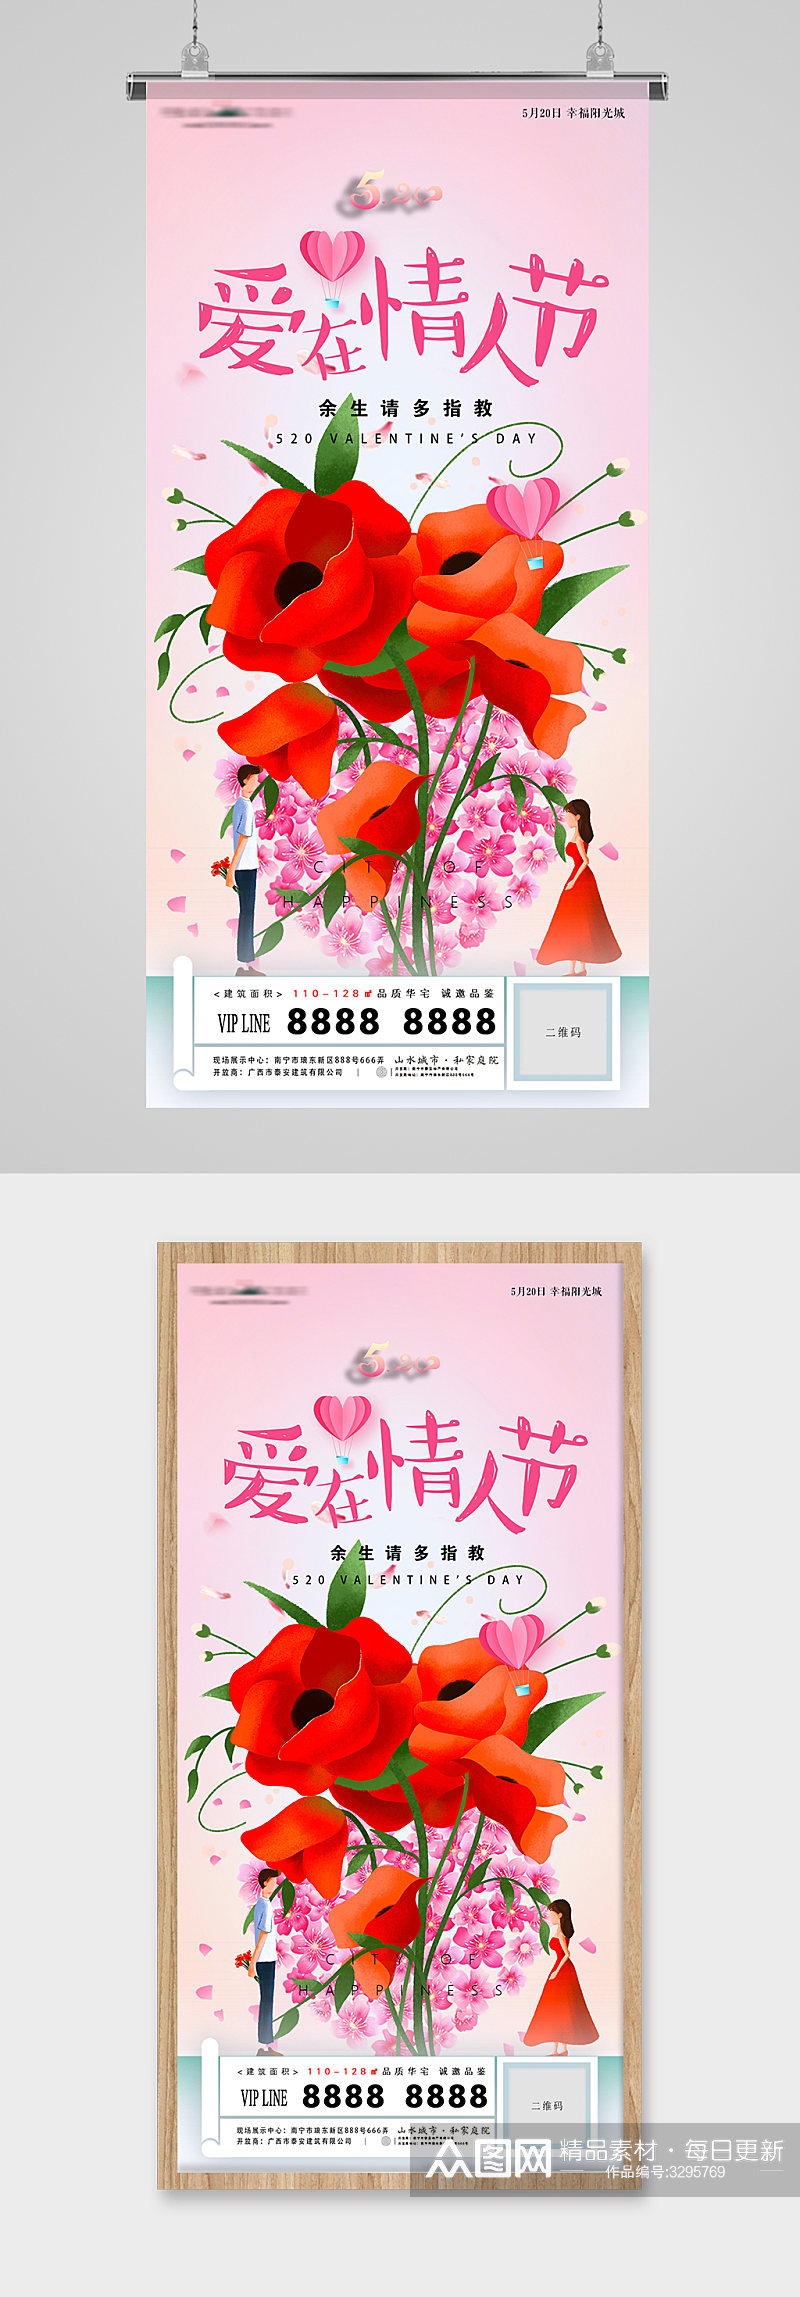 520爱在情人节鲜花插画地产海报素材